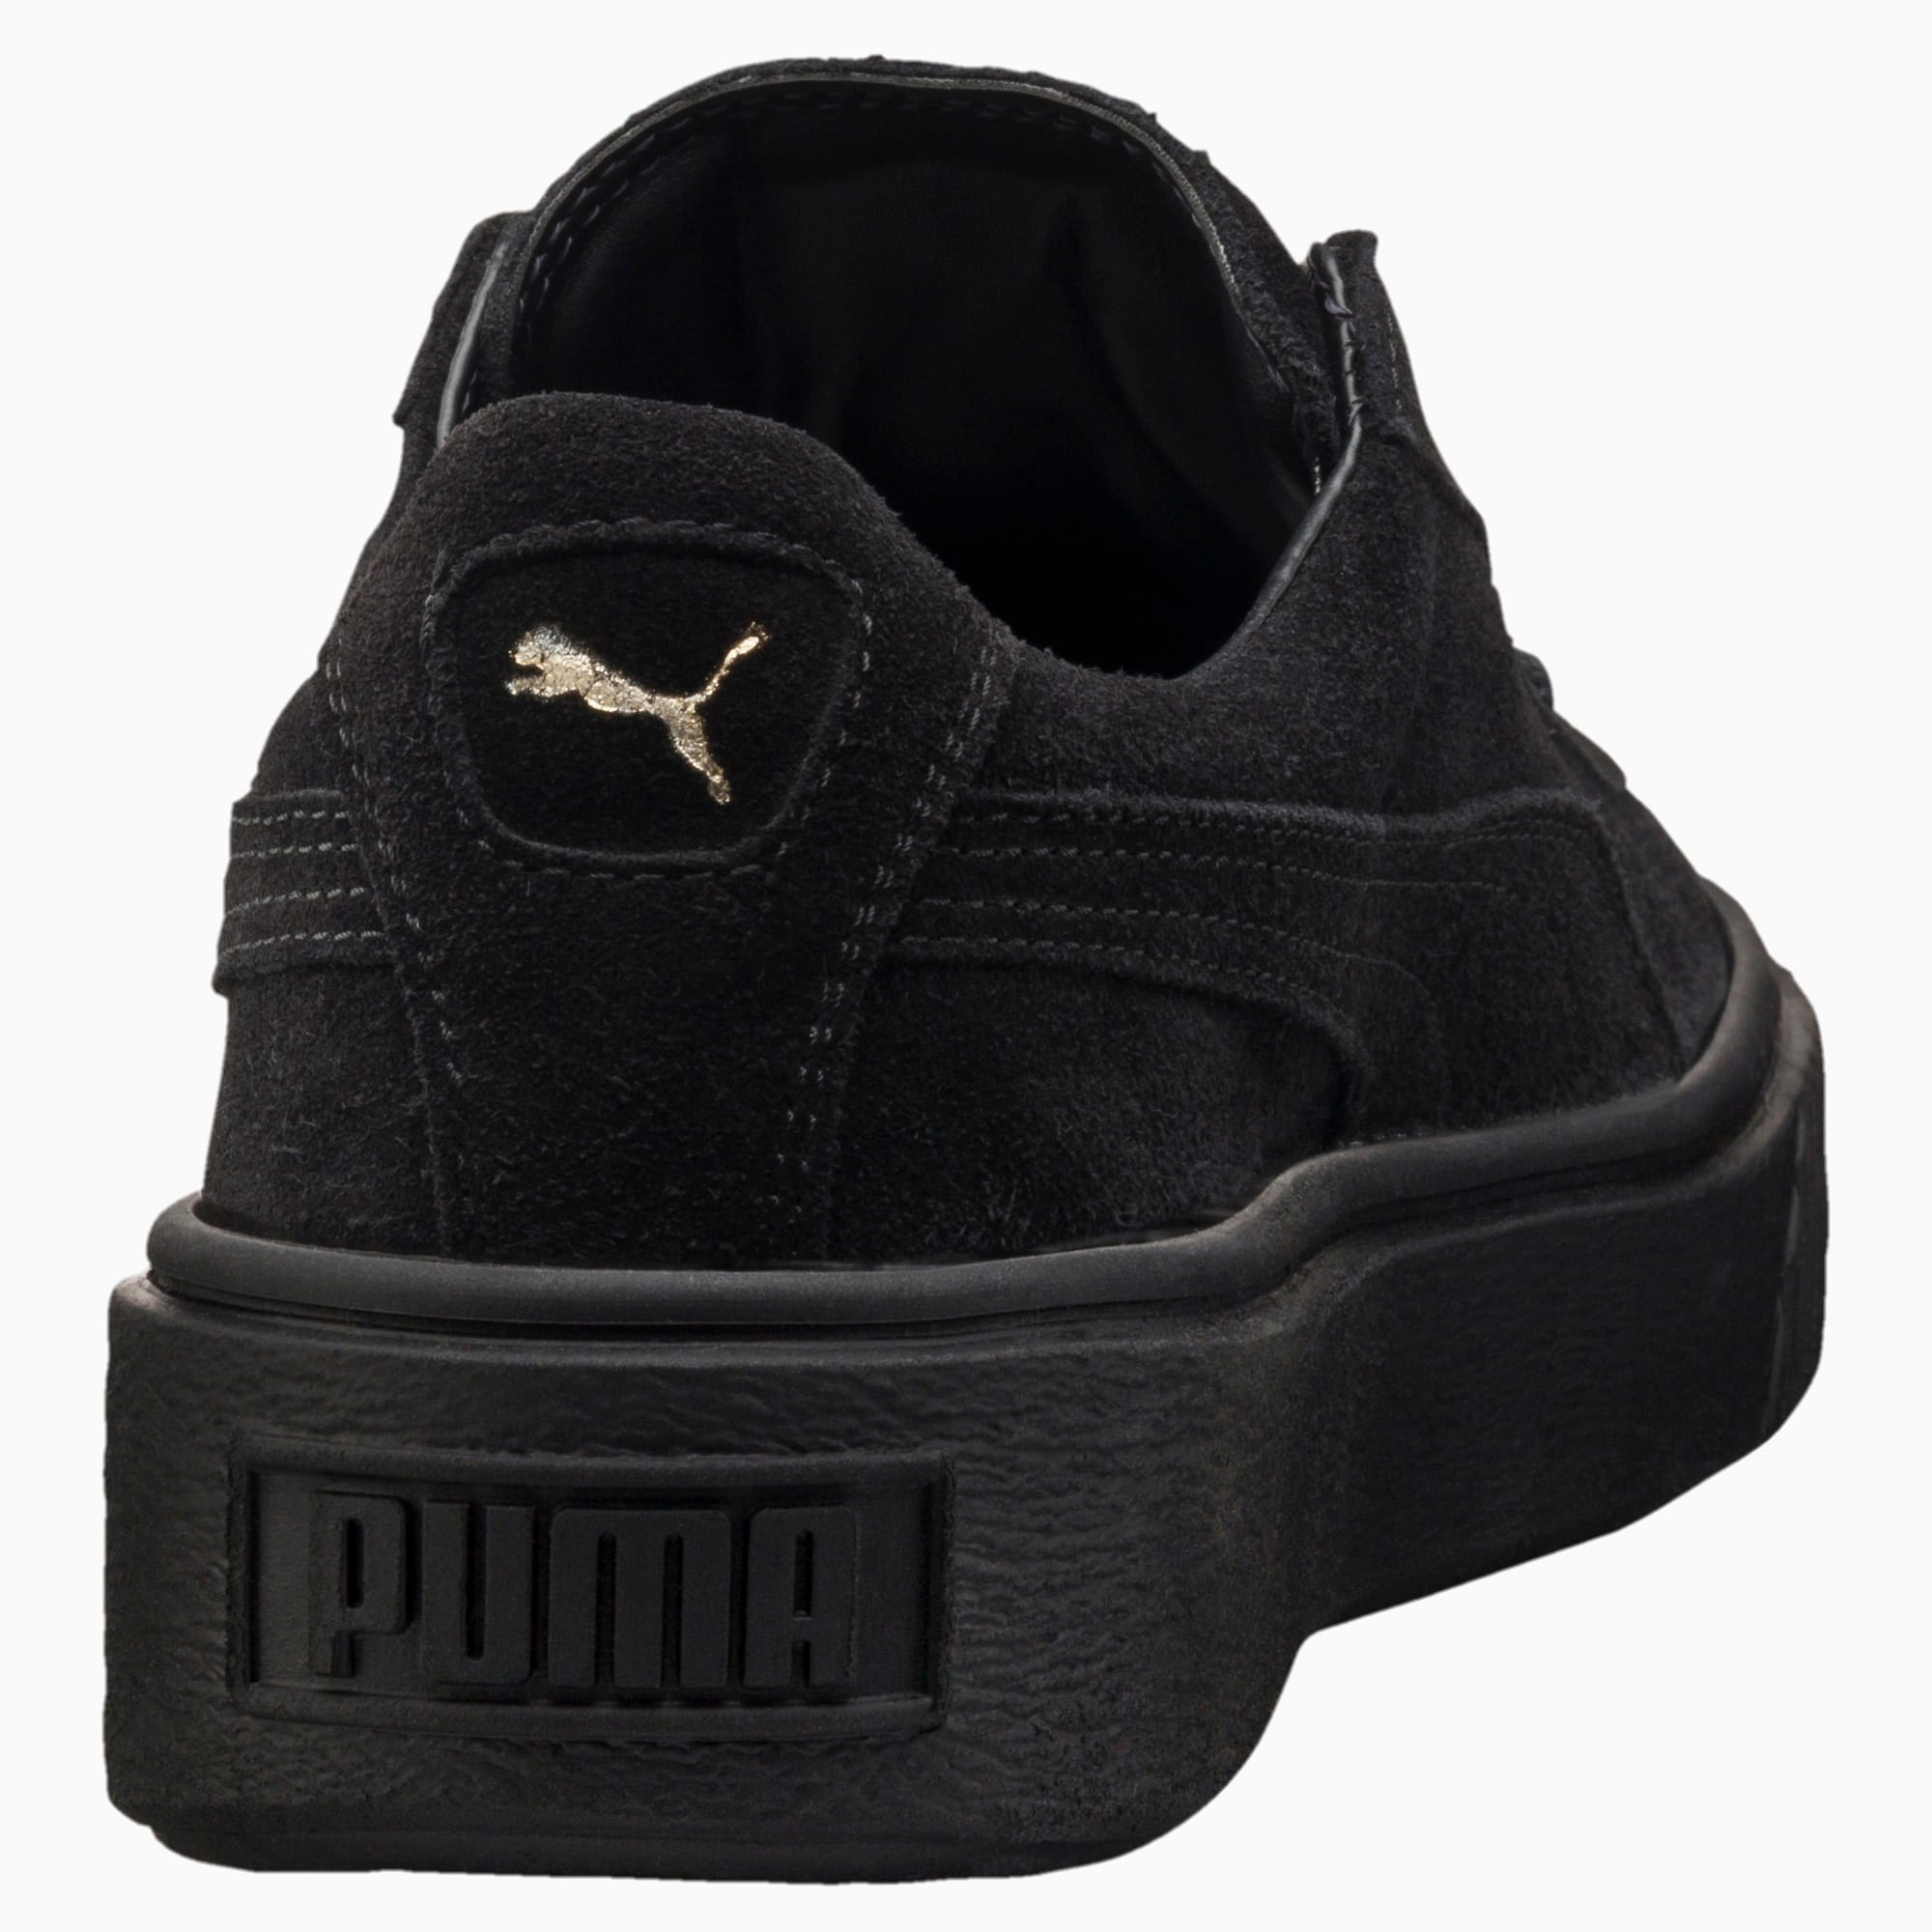 puma suede platform all black